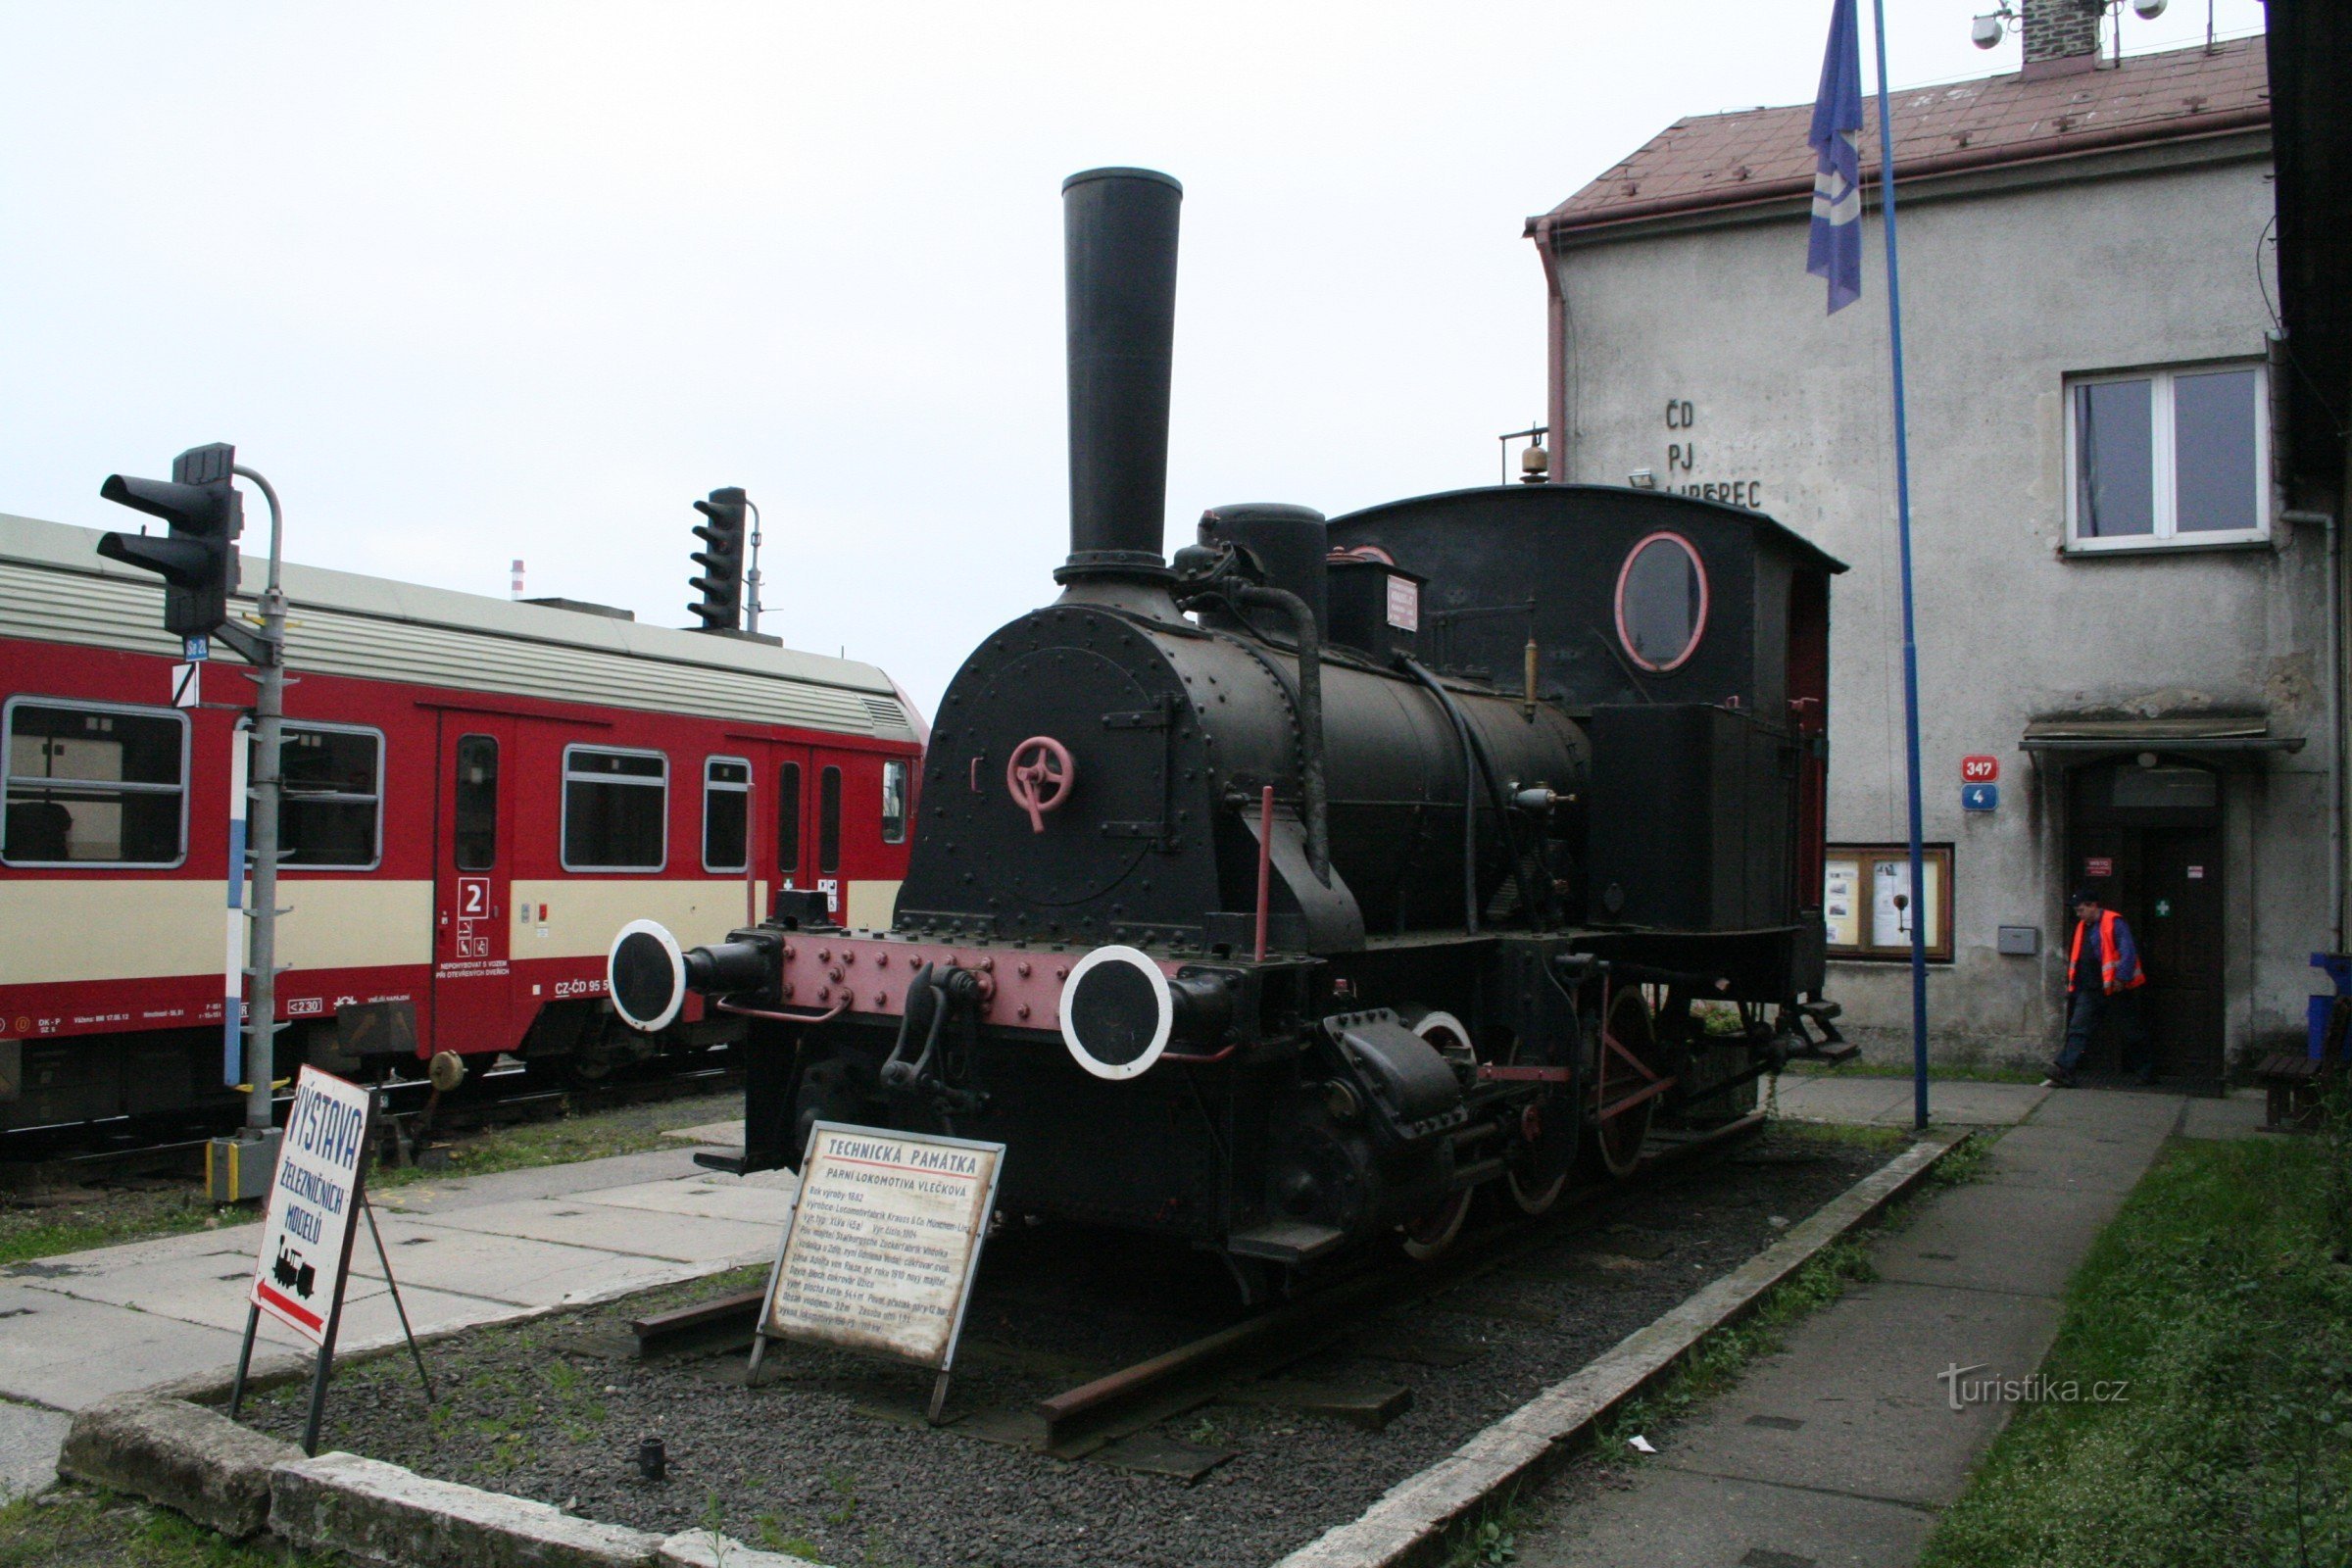 Monumentul feroviar - locomotiva cu abur Adolf